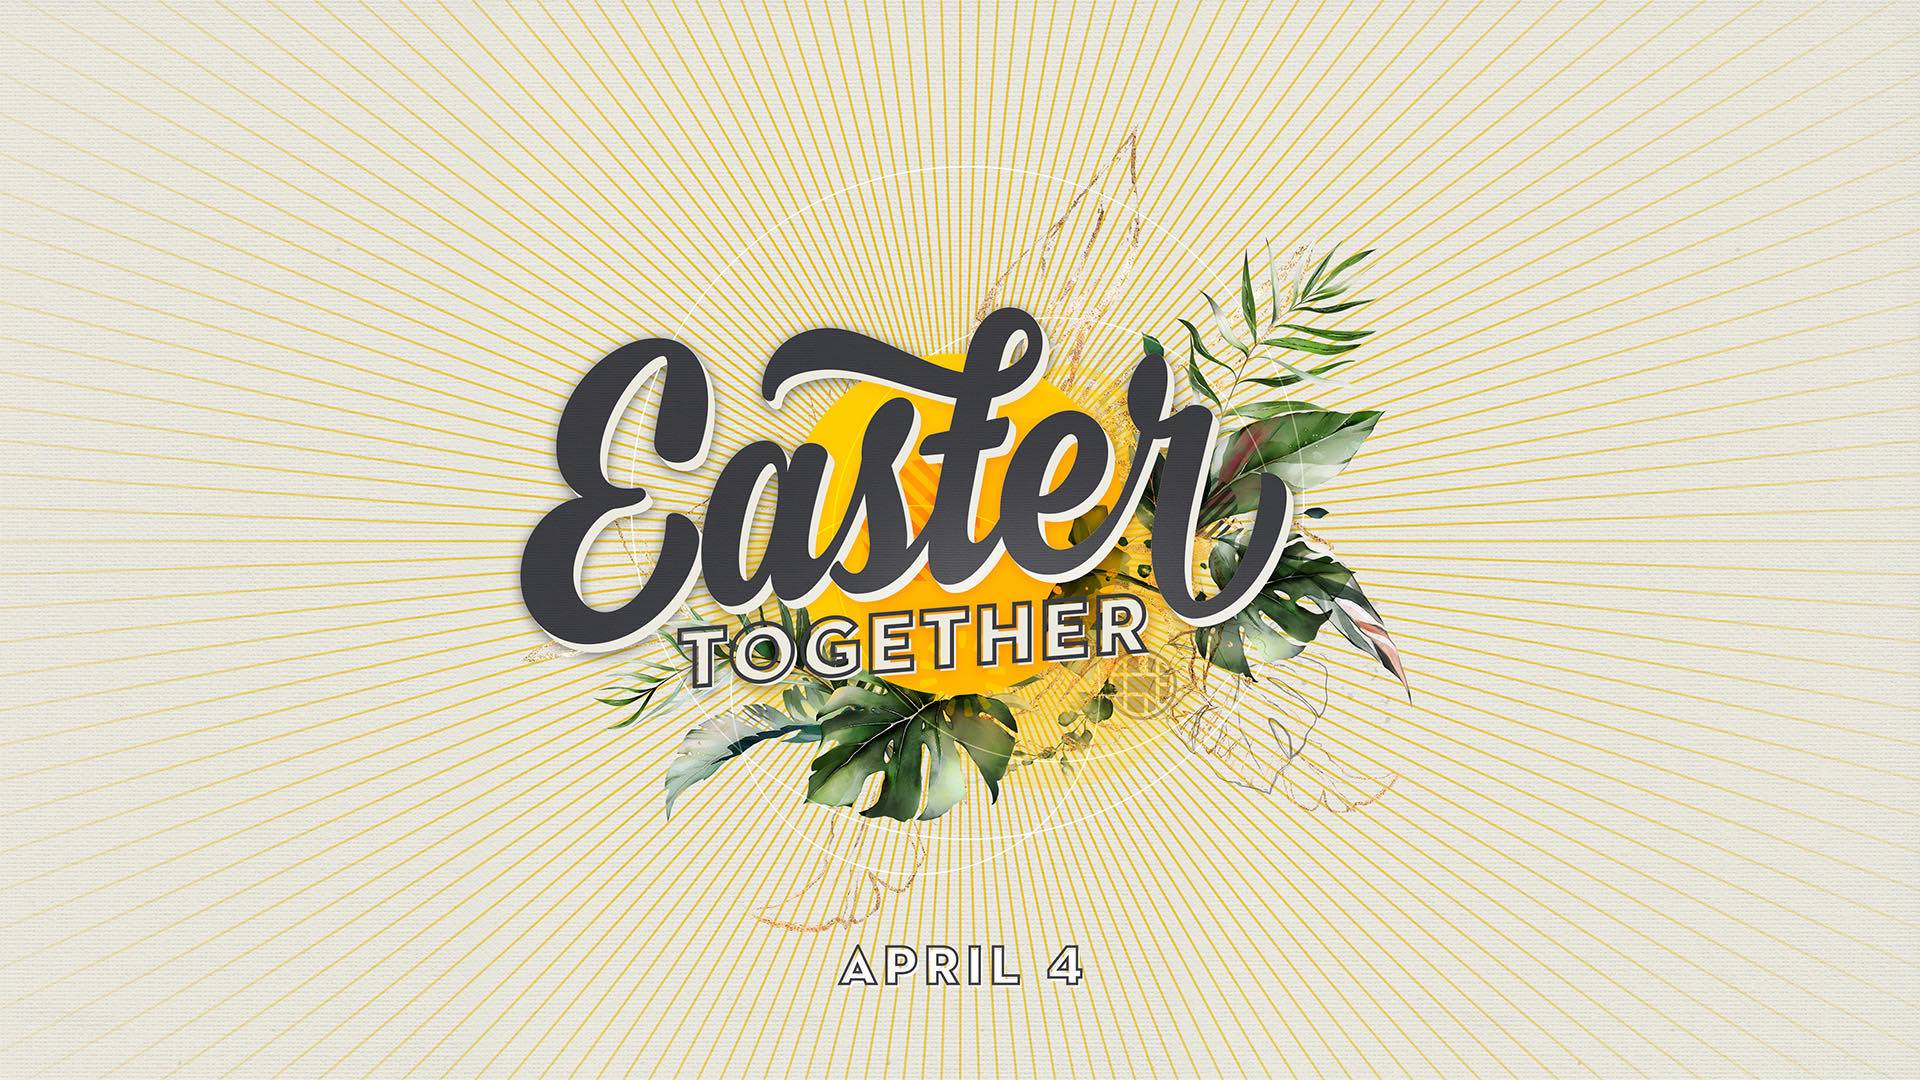 Easter Together